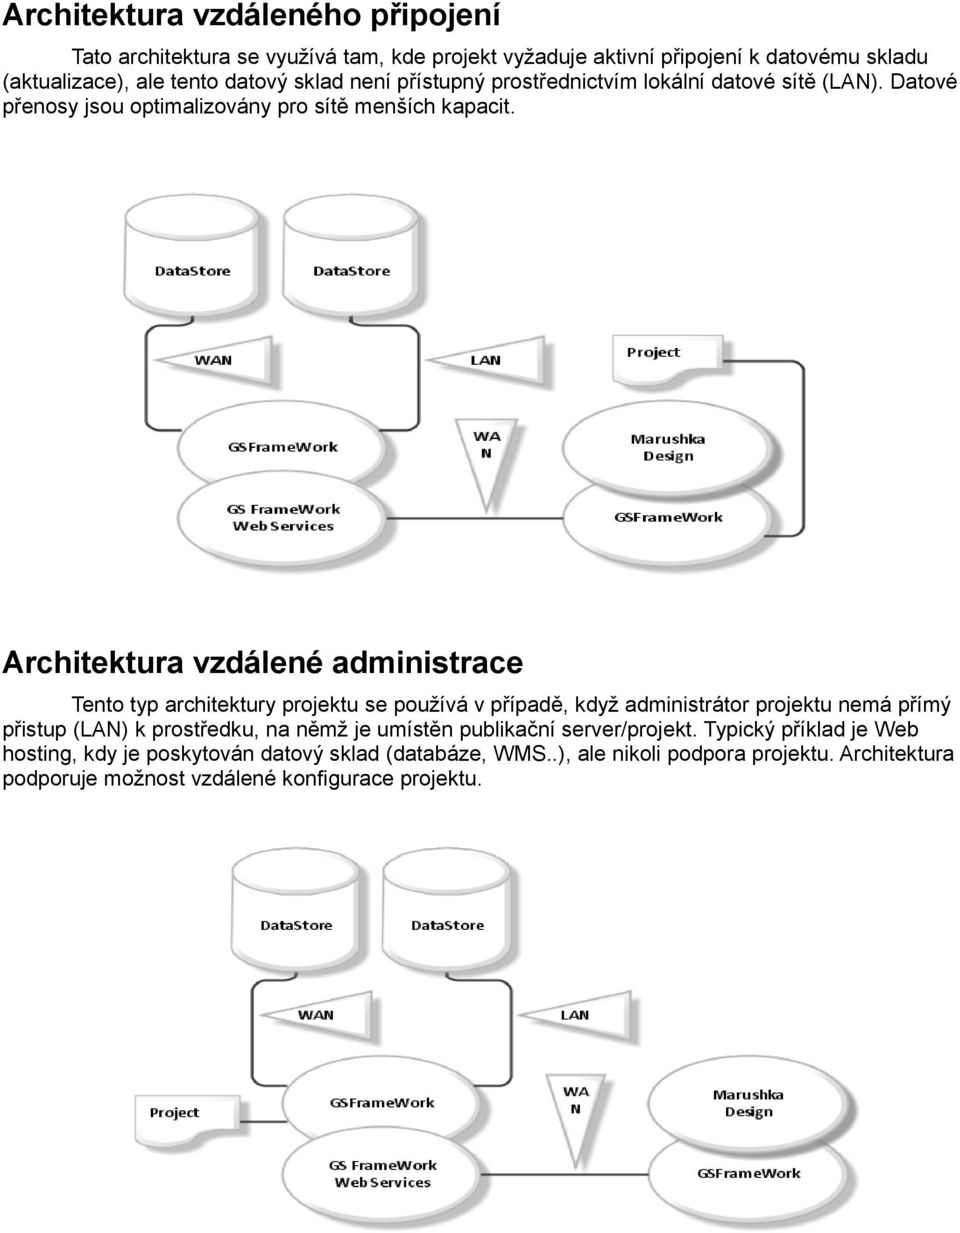 Architektura vzdálené administrace Tento typ architektury projektu se používá v případě, když administrátor projektu nemá přímý přistup (LAN) k prostředku, na němž